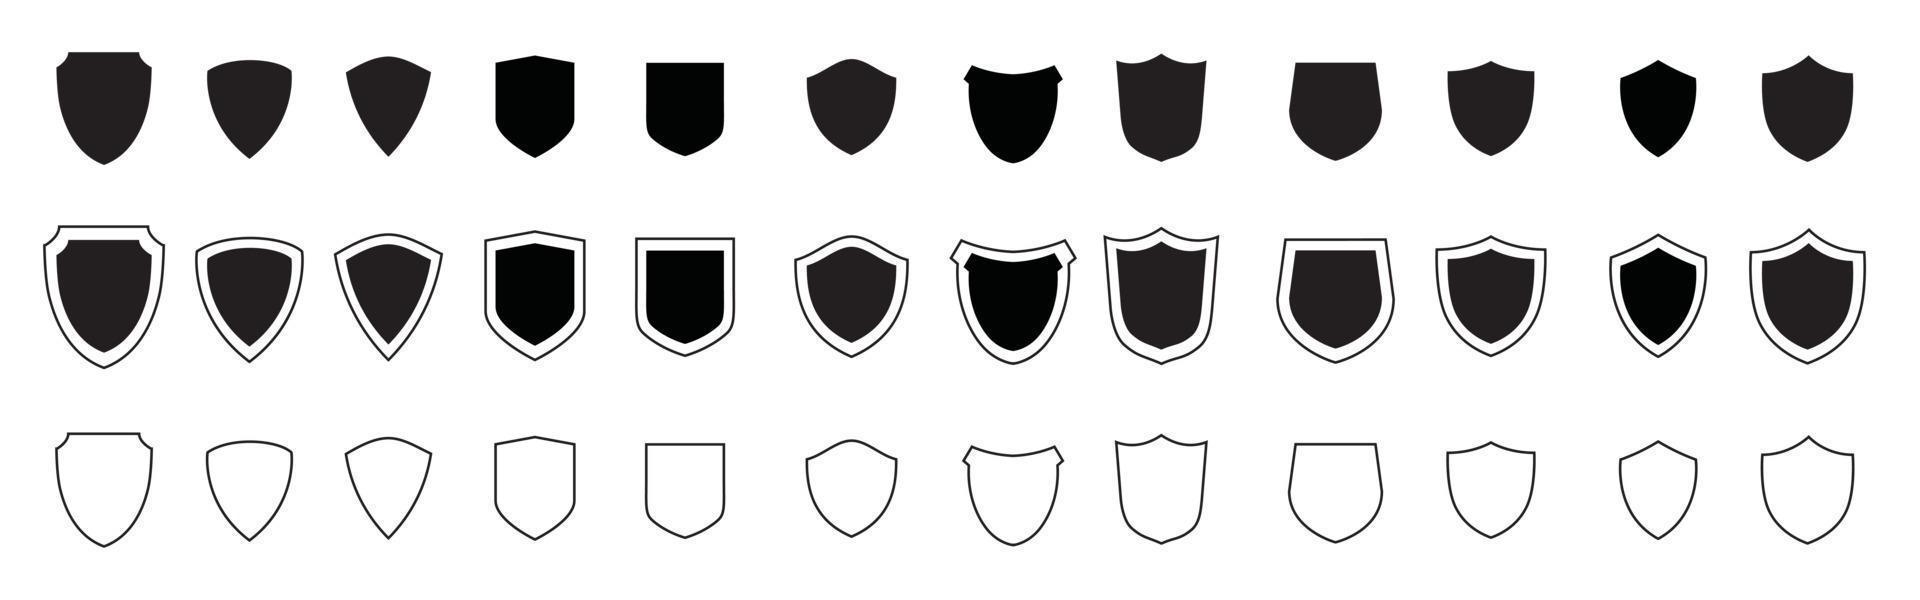 scudo nero set di icone. proteggere la collezione silhouette di scudi. vettore